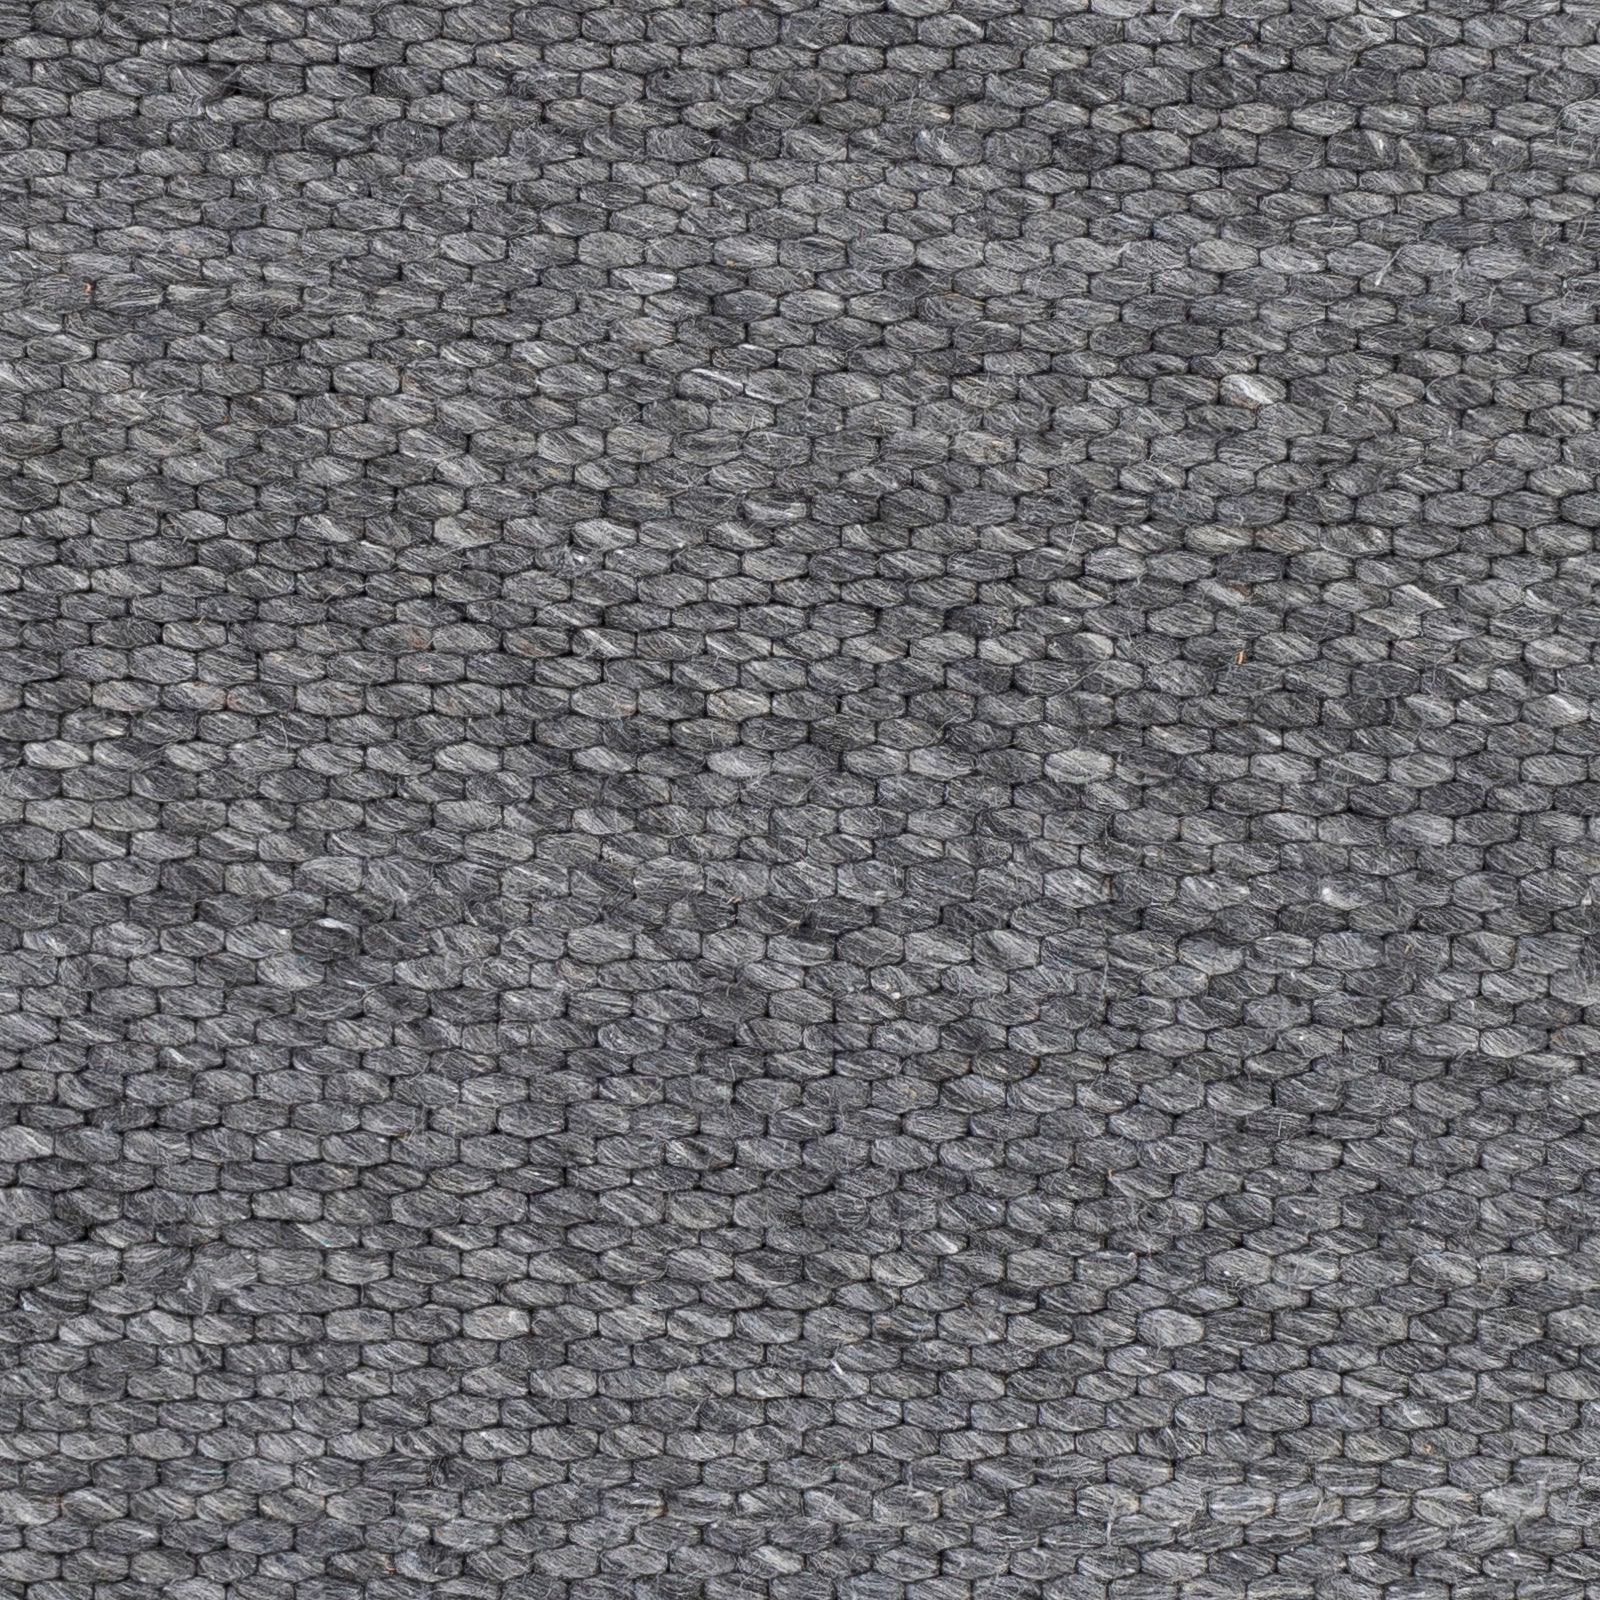 Surya Colarado Cdo-2306 Medium Gray, Charcoal Area Rug